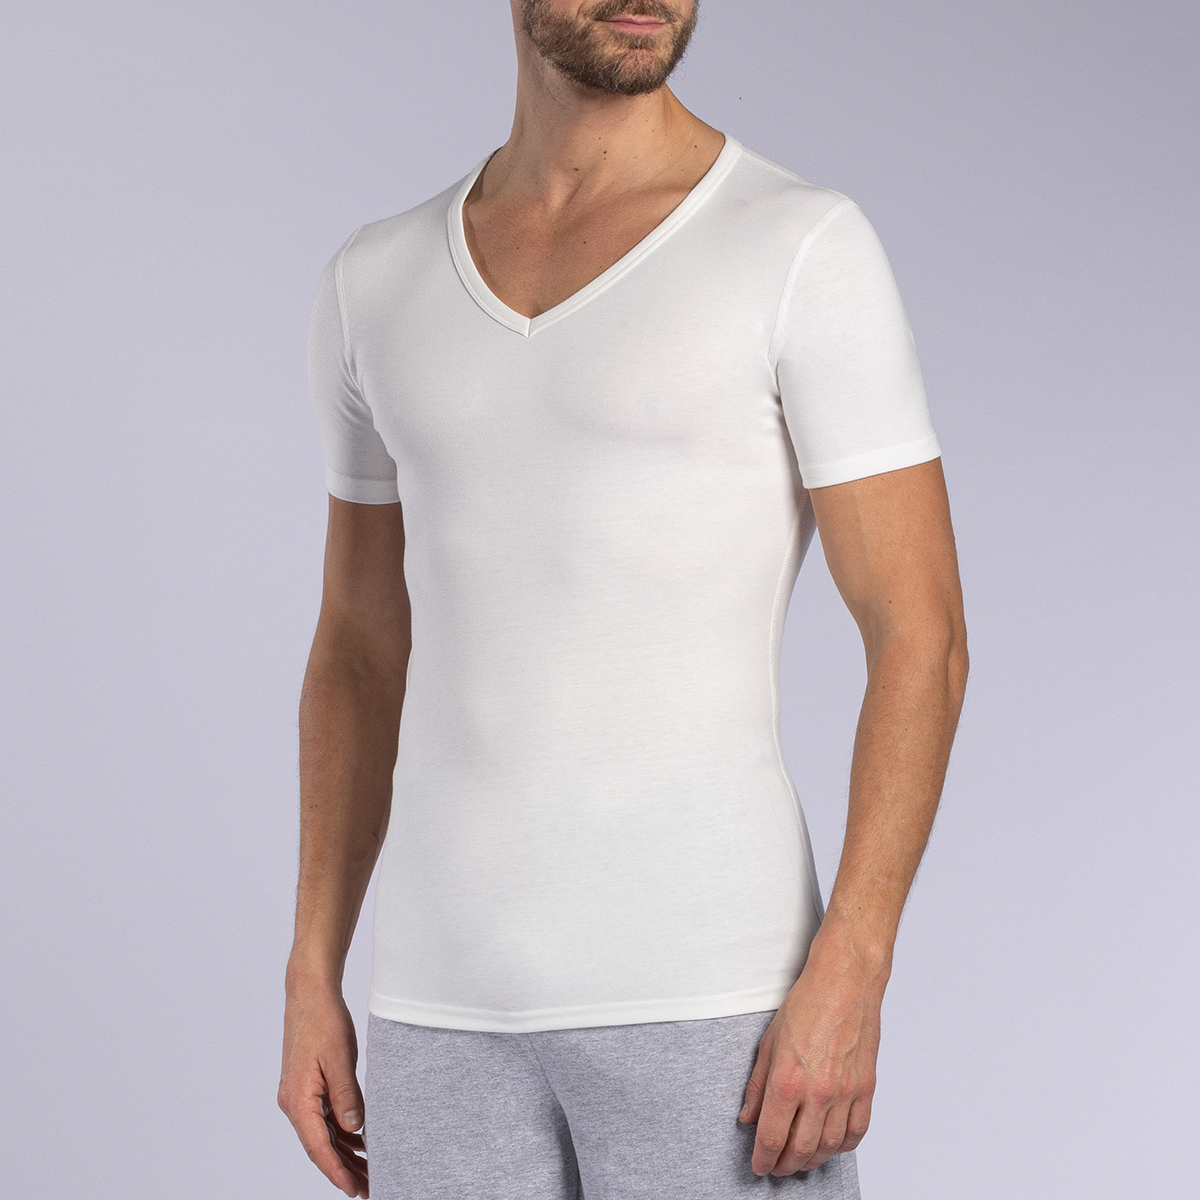 Acheter Tee-shirt thermique homme Blanc ? Bon et bon marché